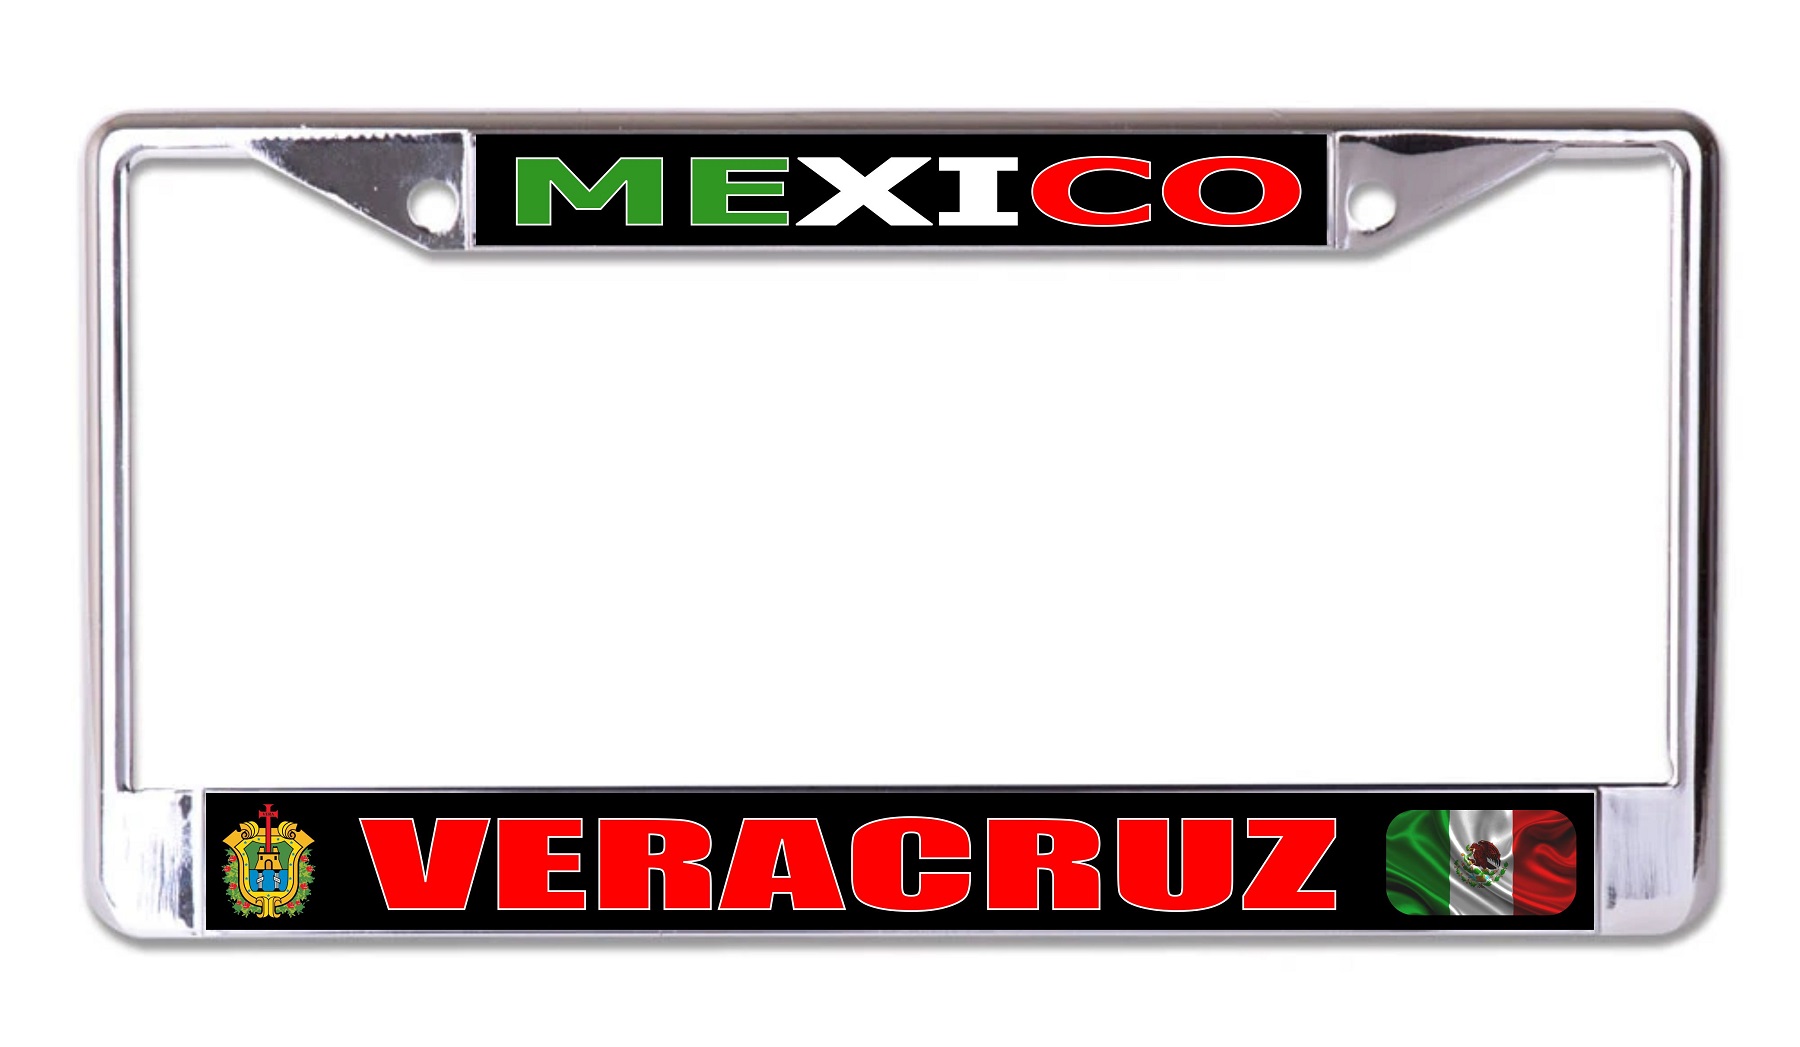 Mexico Veracruz Chrome LICENSE PLATE Frame